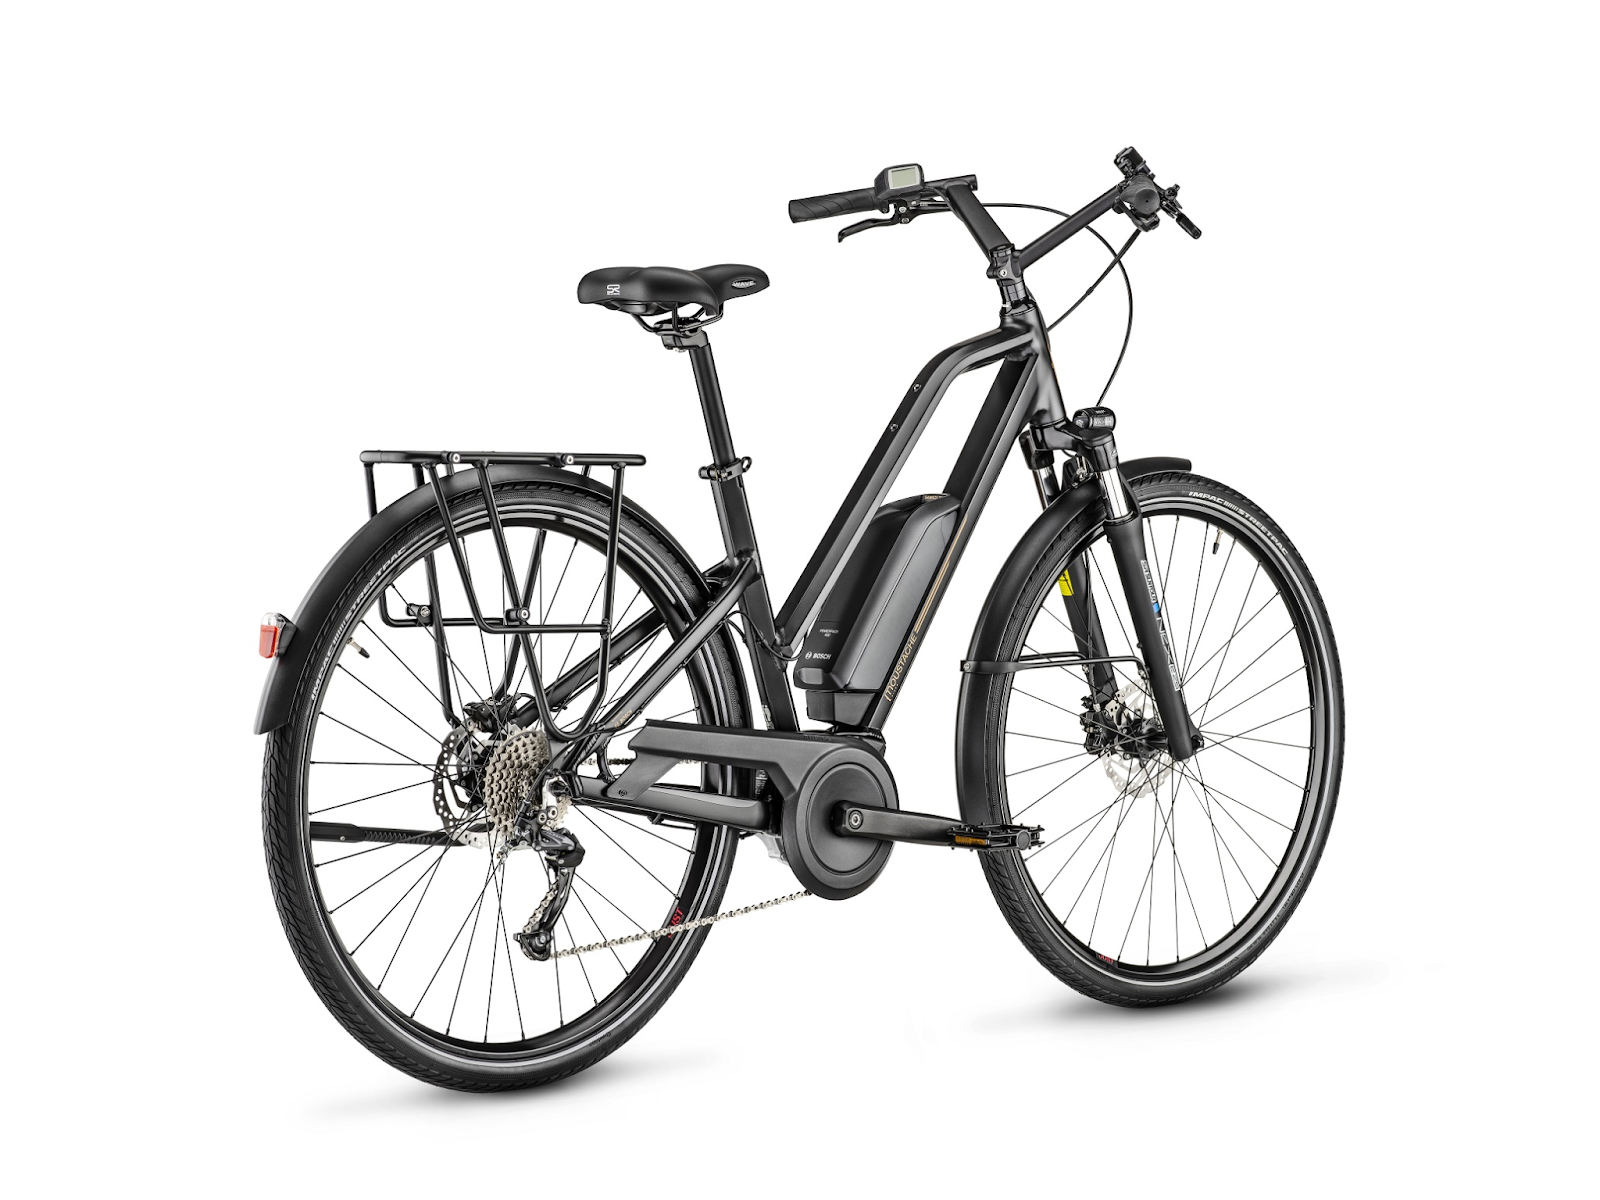 Meilleurs vélos à assistance électrique à - de 2500 euros - Cyclofix